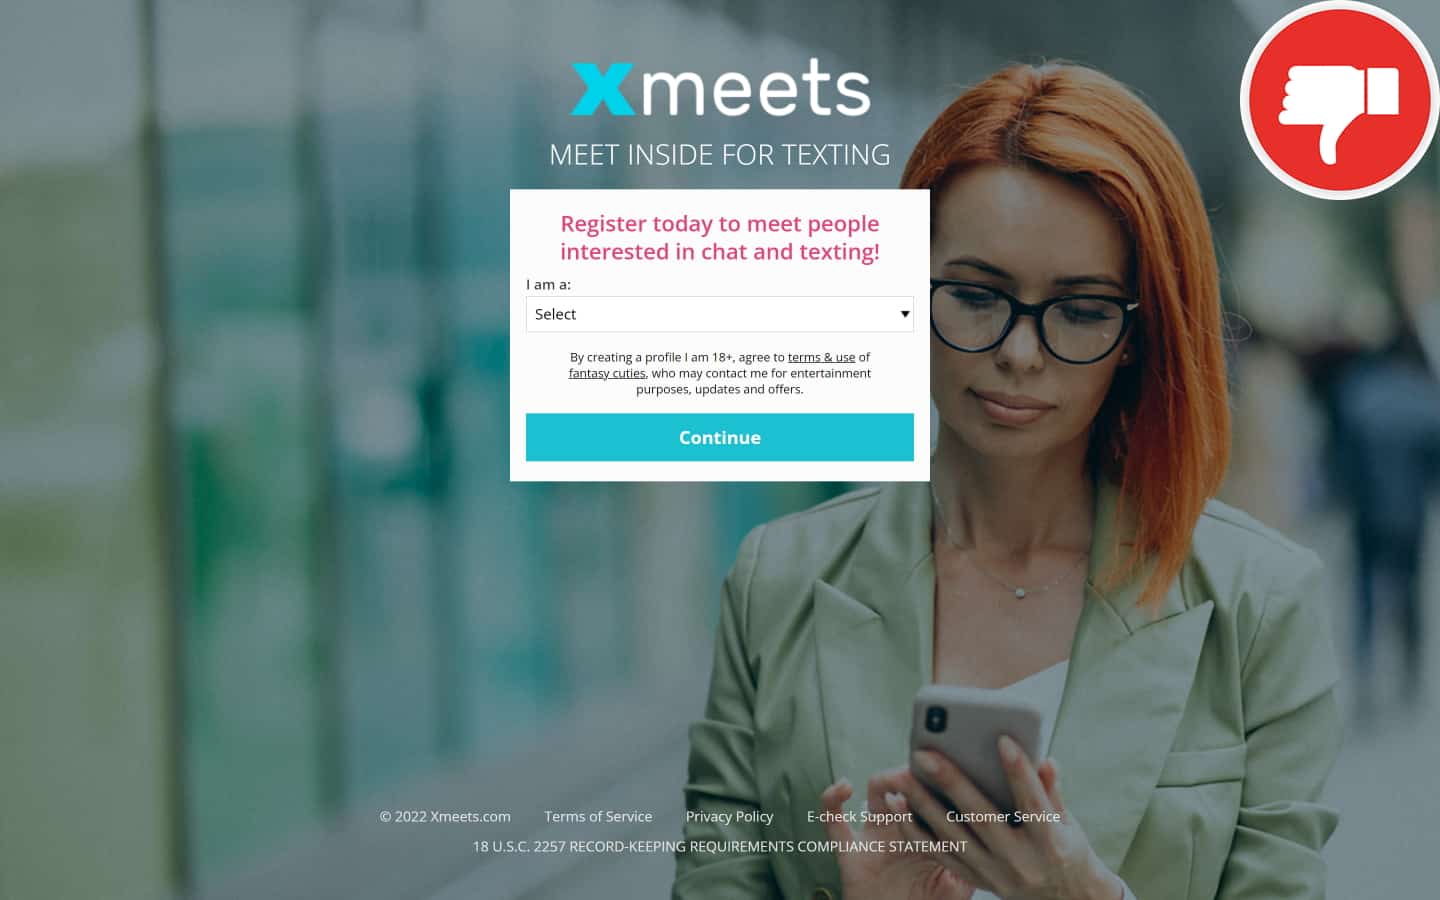 Review xMeets.com scam experience